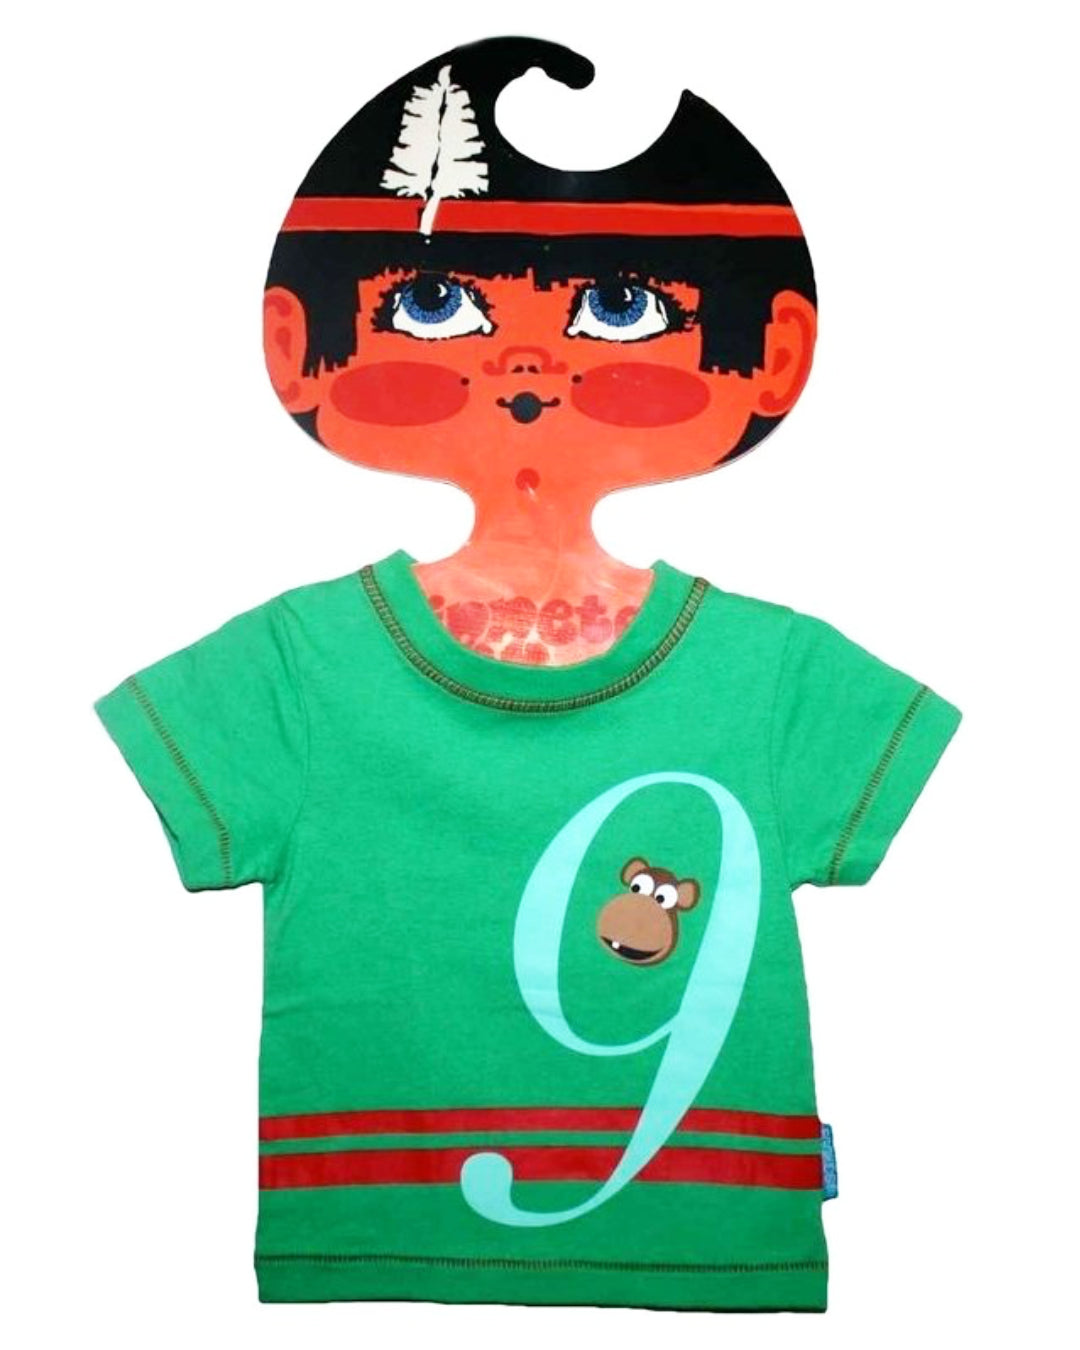 T-Shirt in grün mit großer 9 und kleinem Affen für Kinder aus Baumwolle